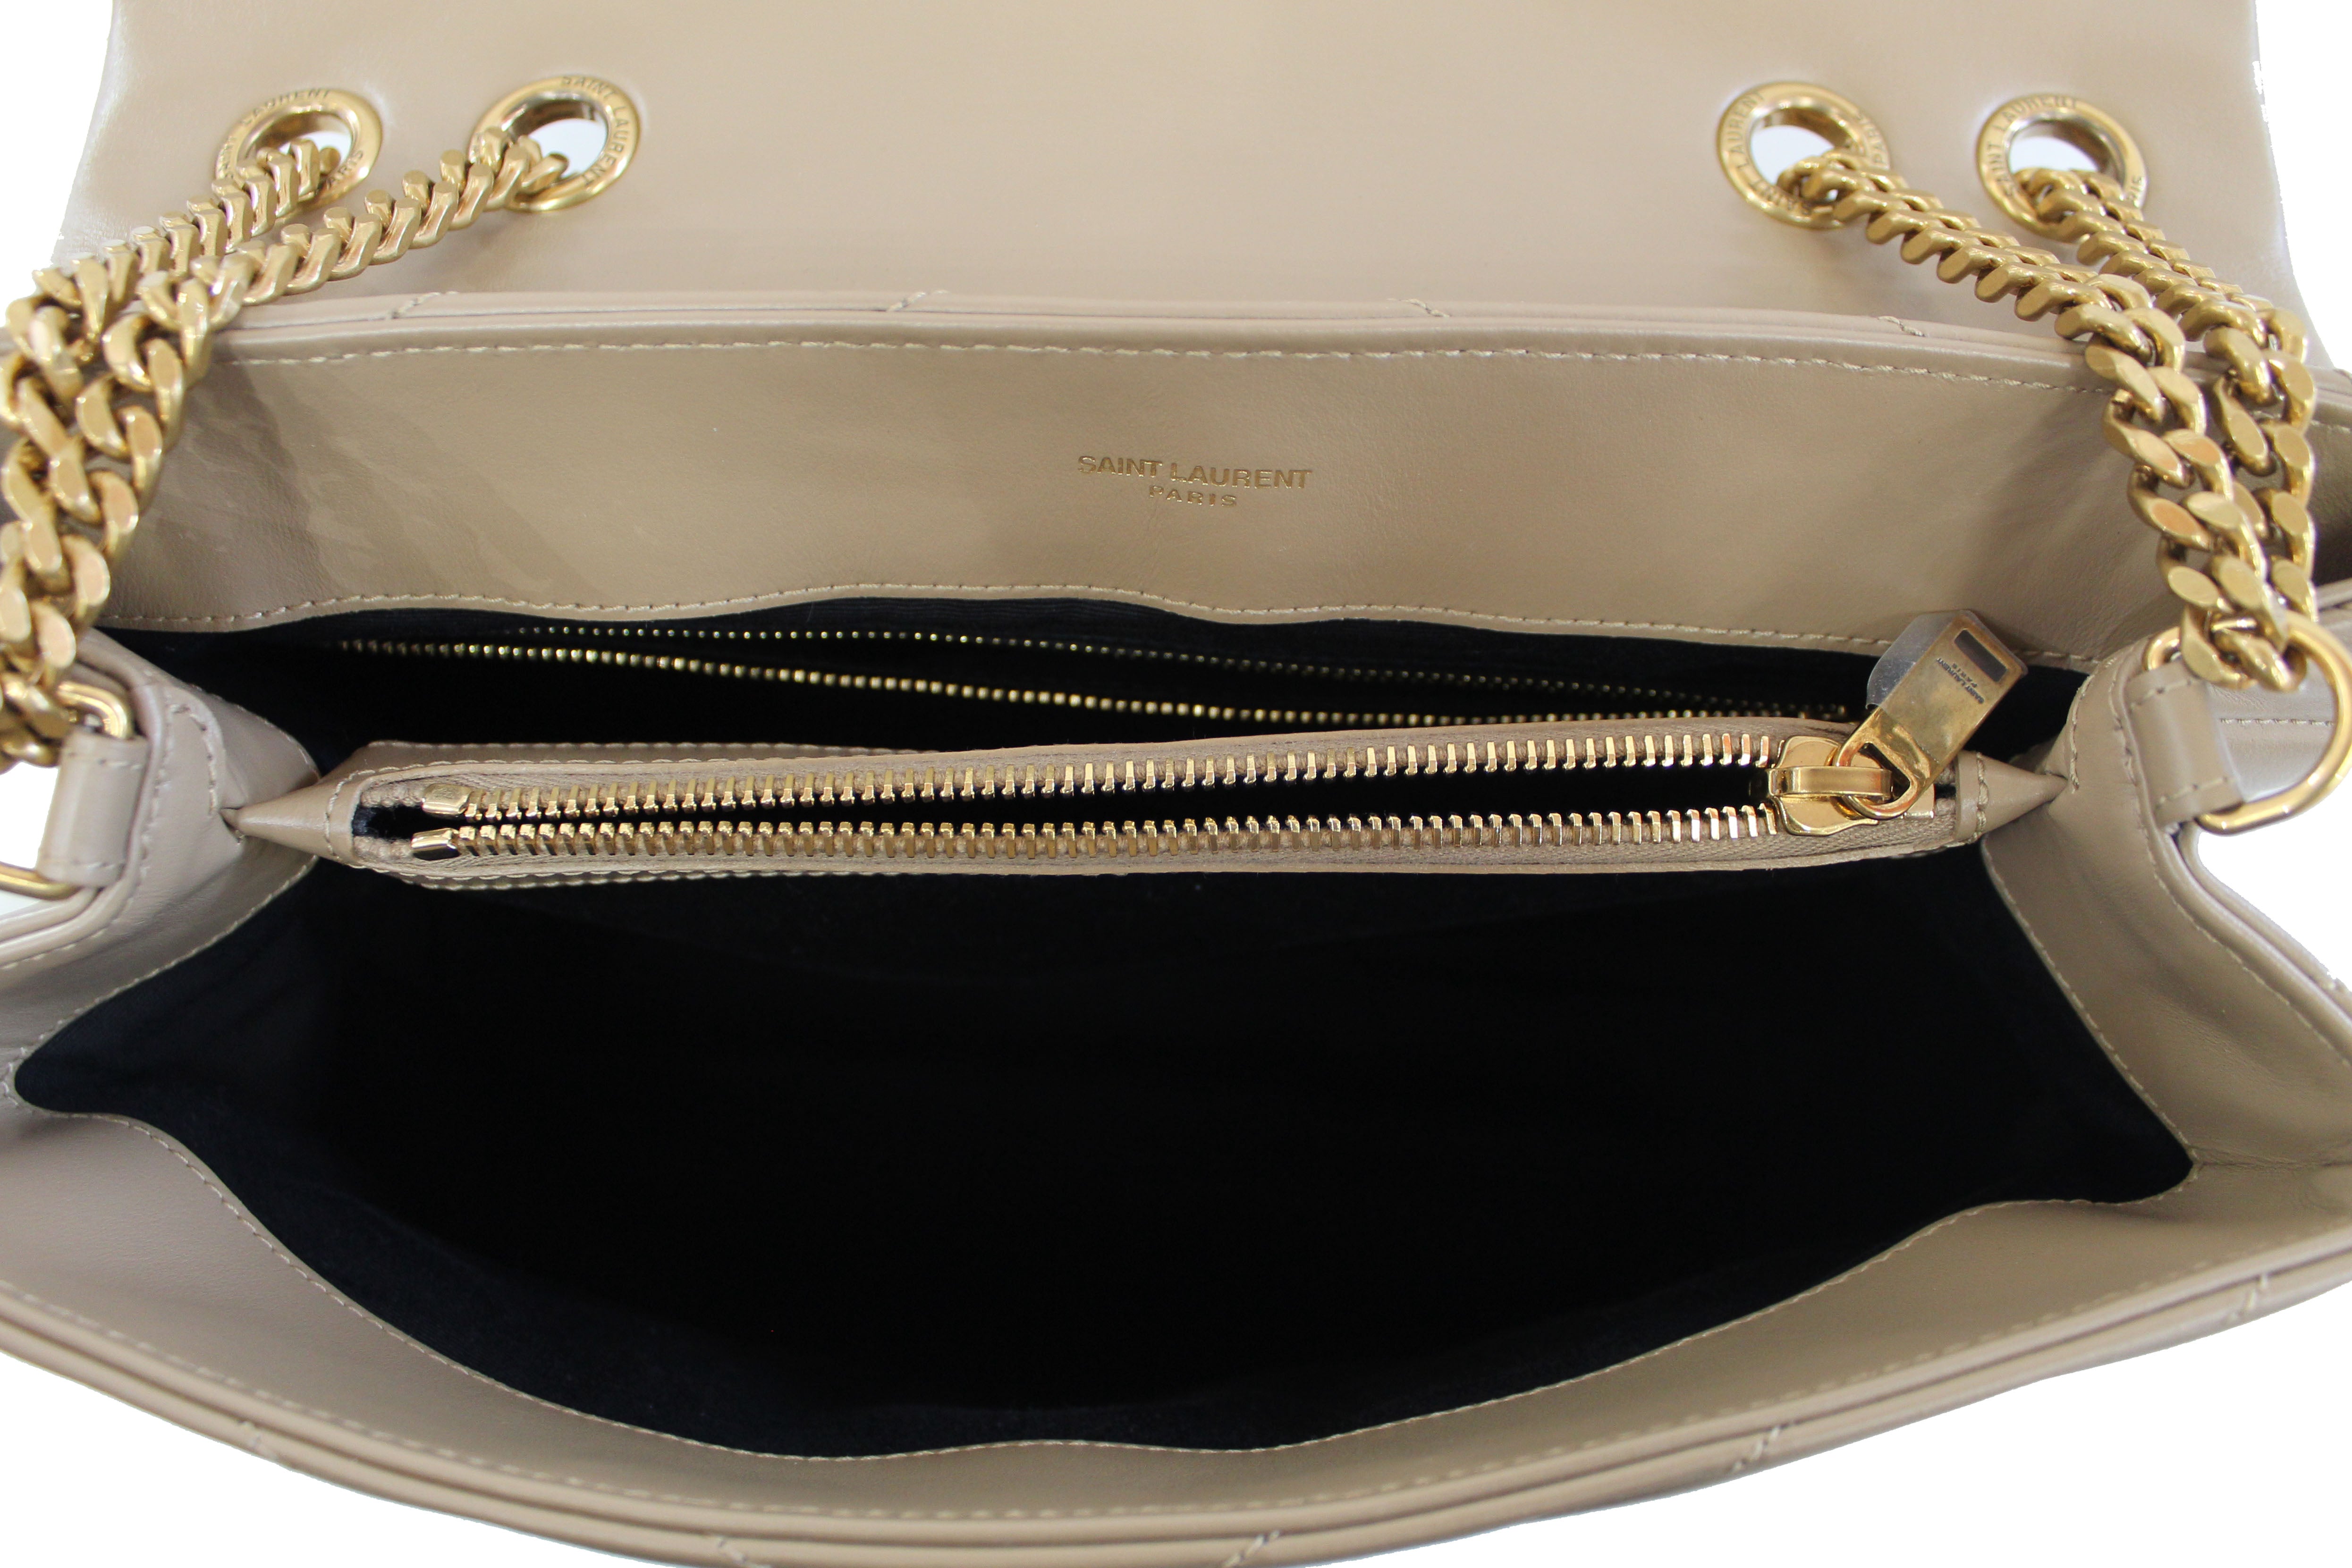 Handbag Yves Saint Laurent Beige in Suede - 34295094